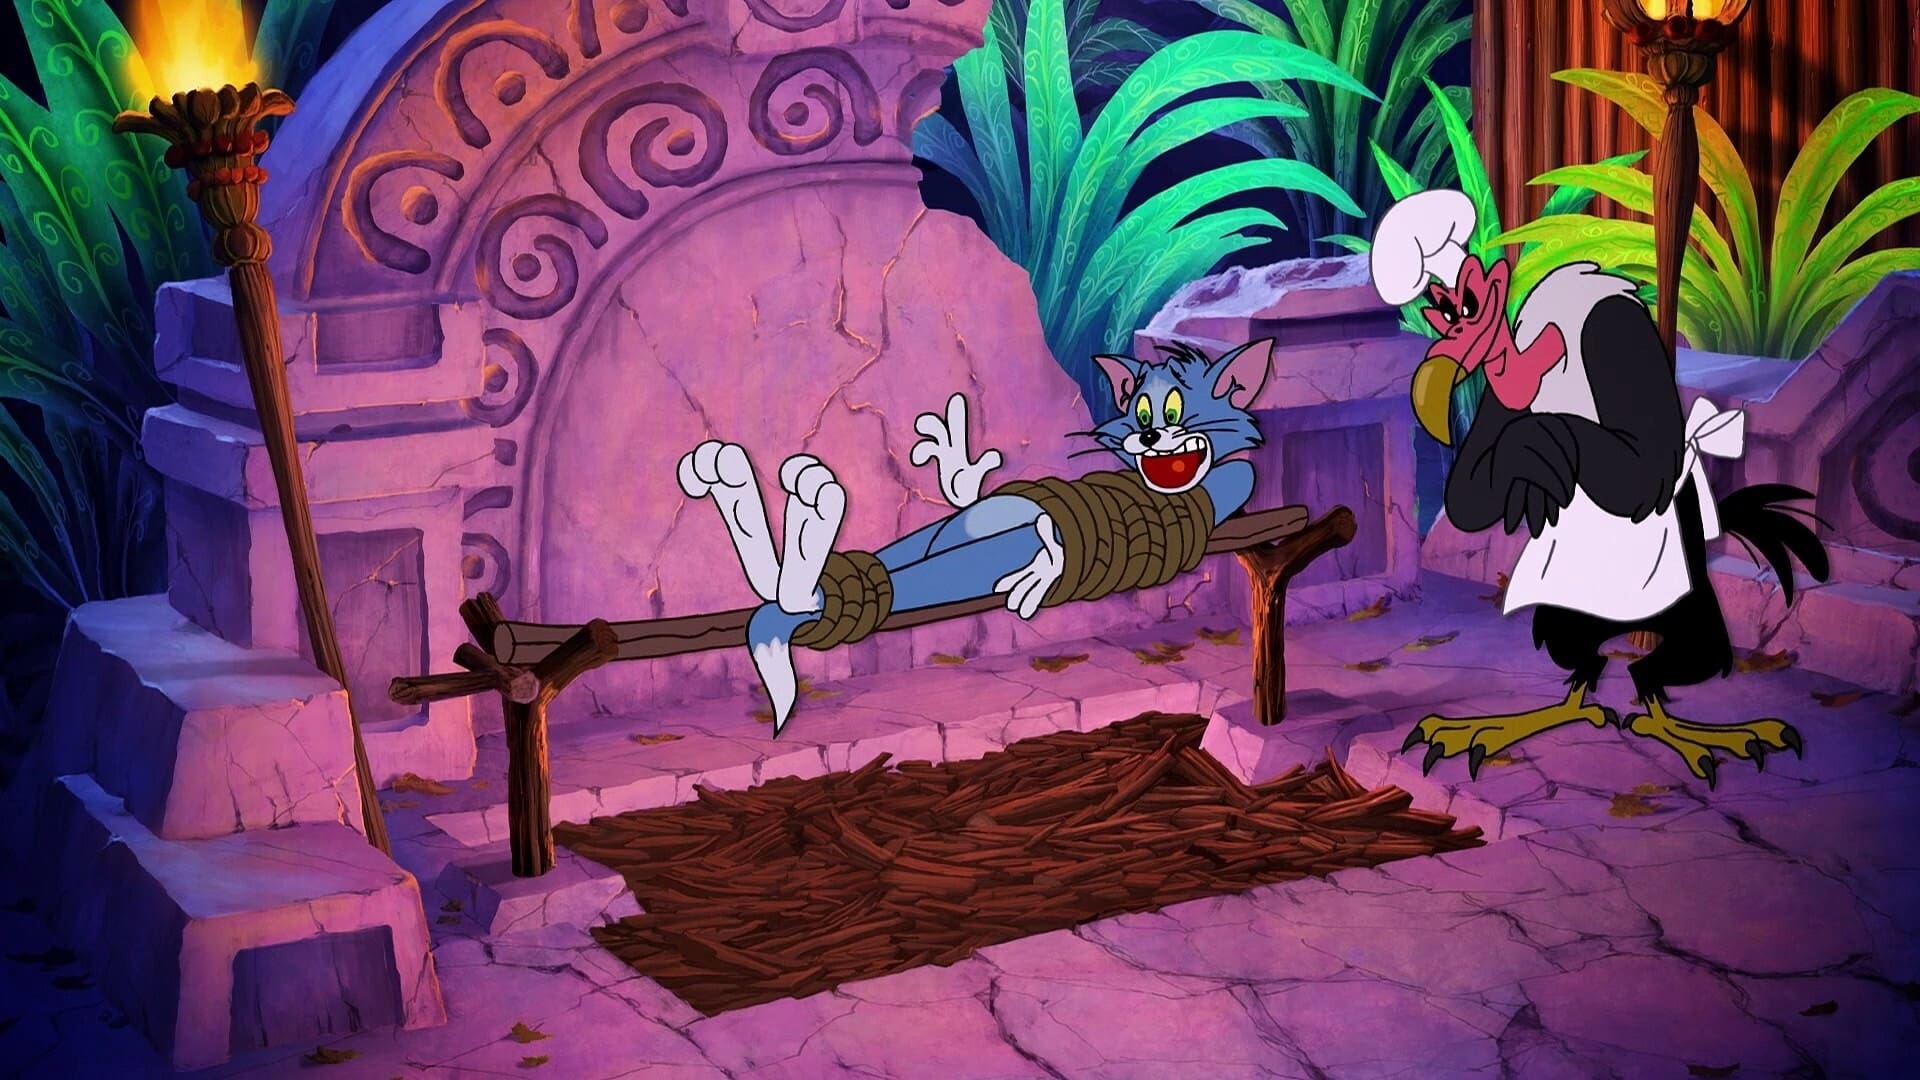 Tom és Jerry Óz birodalmában (2016)